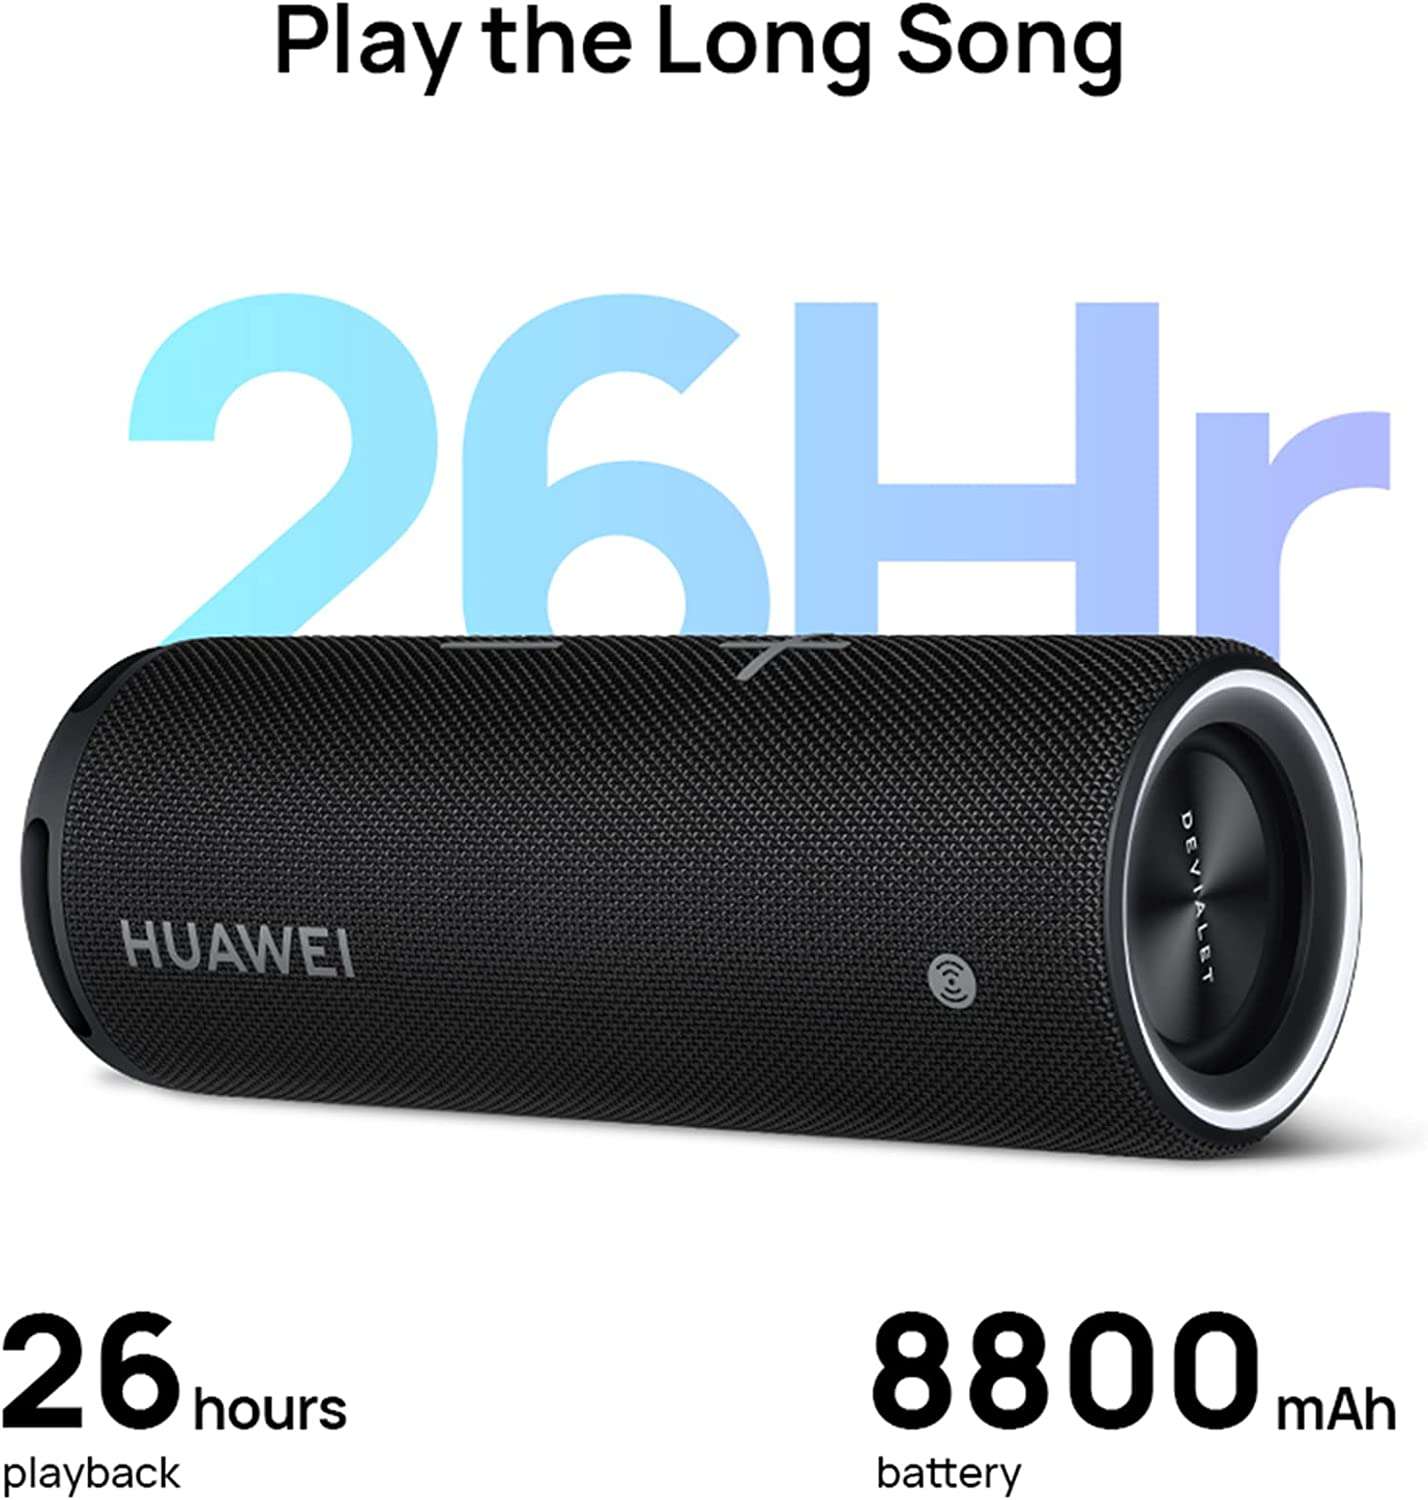 huawei-sound-joy-altoparlante-portatile-spettacolare-prezzo-wow-autonomia